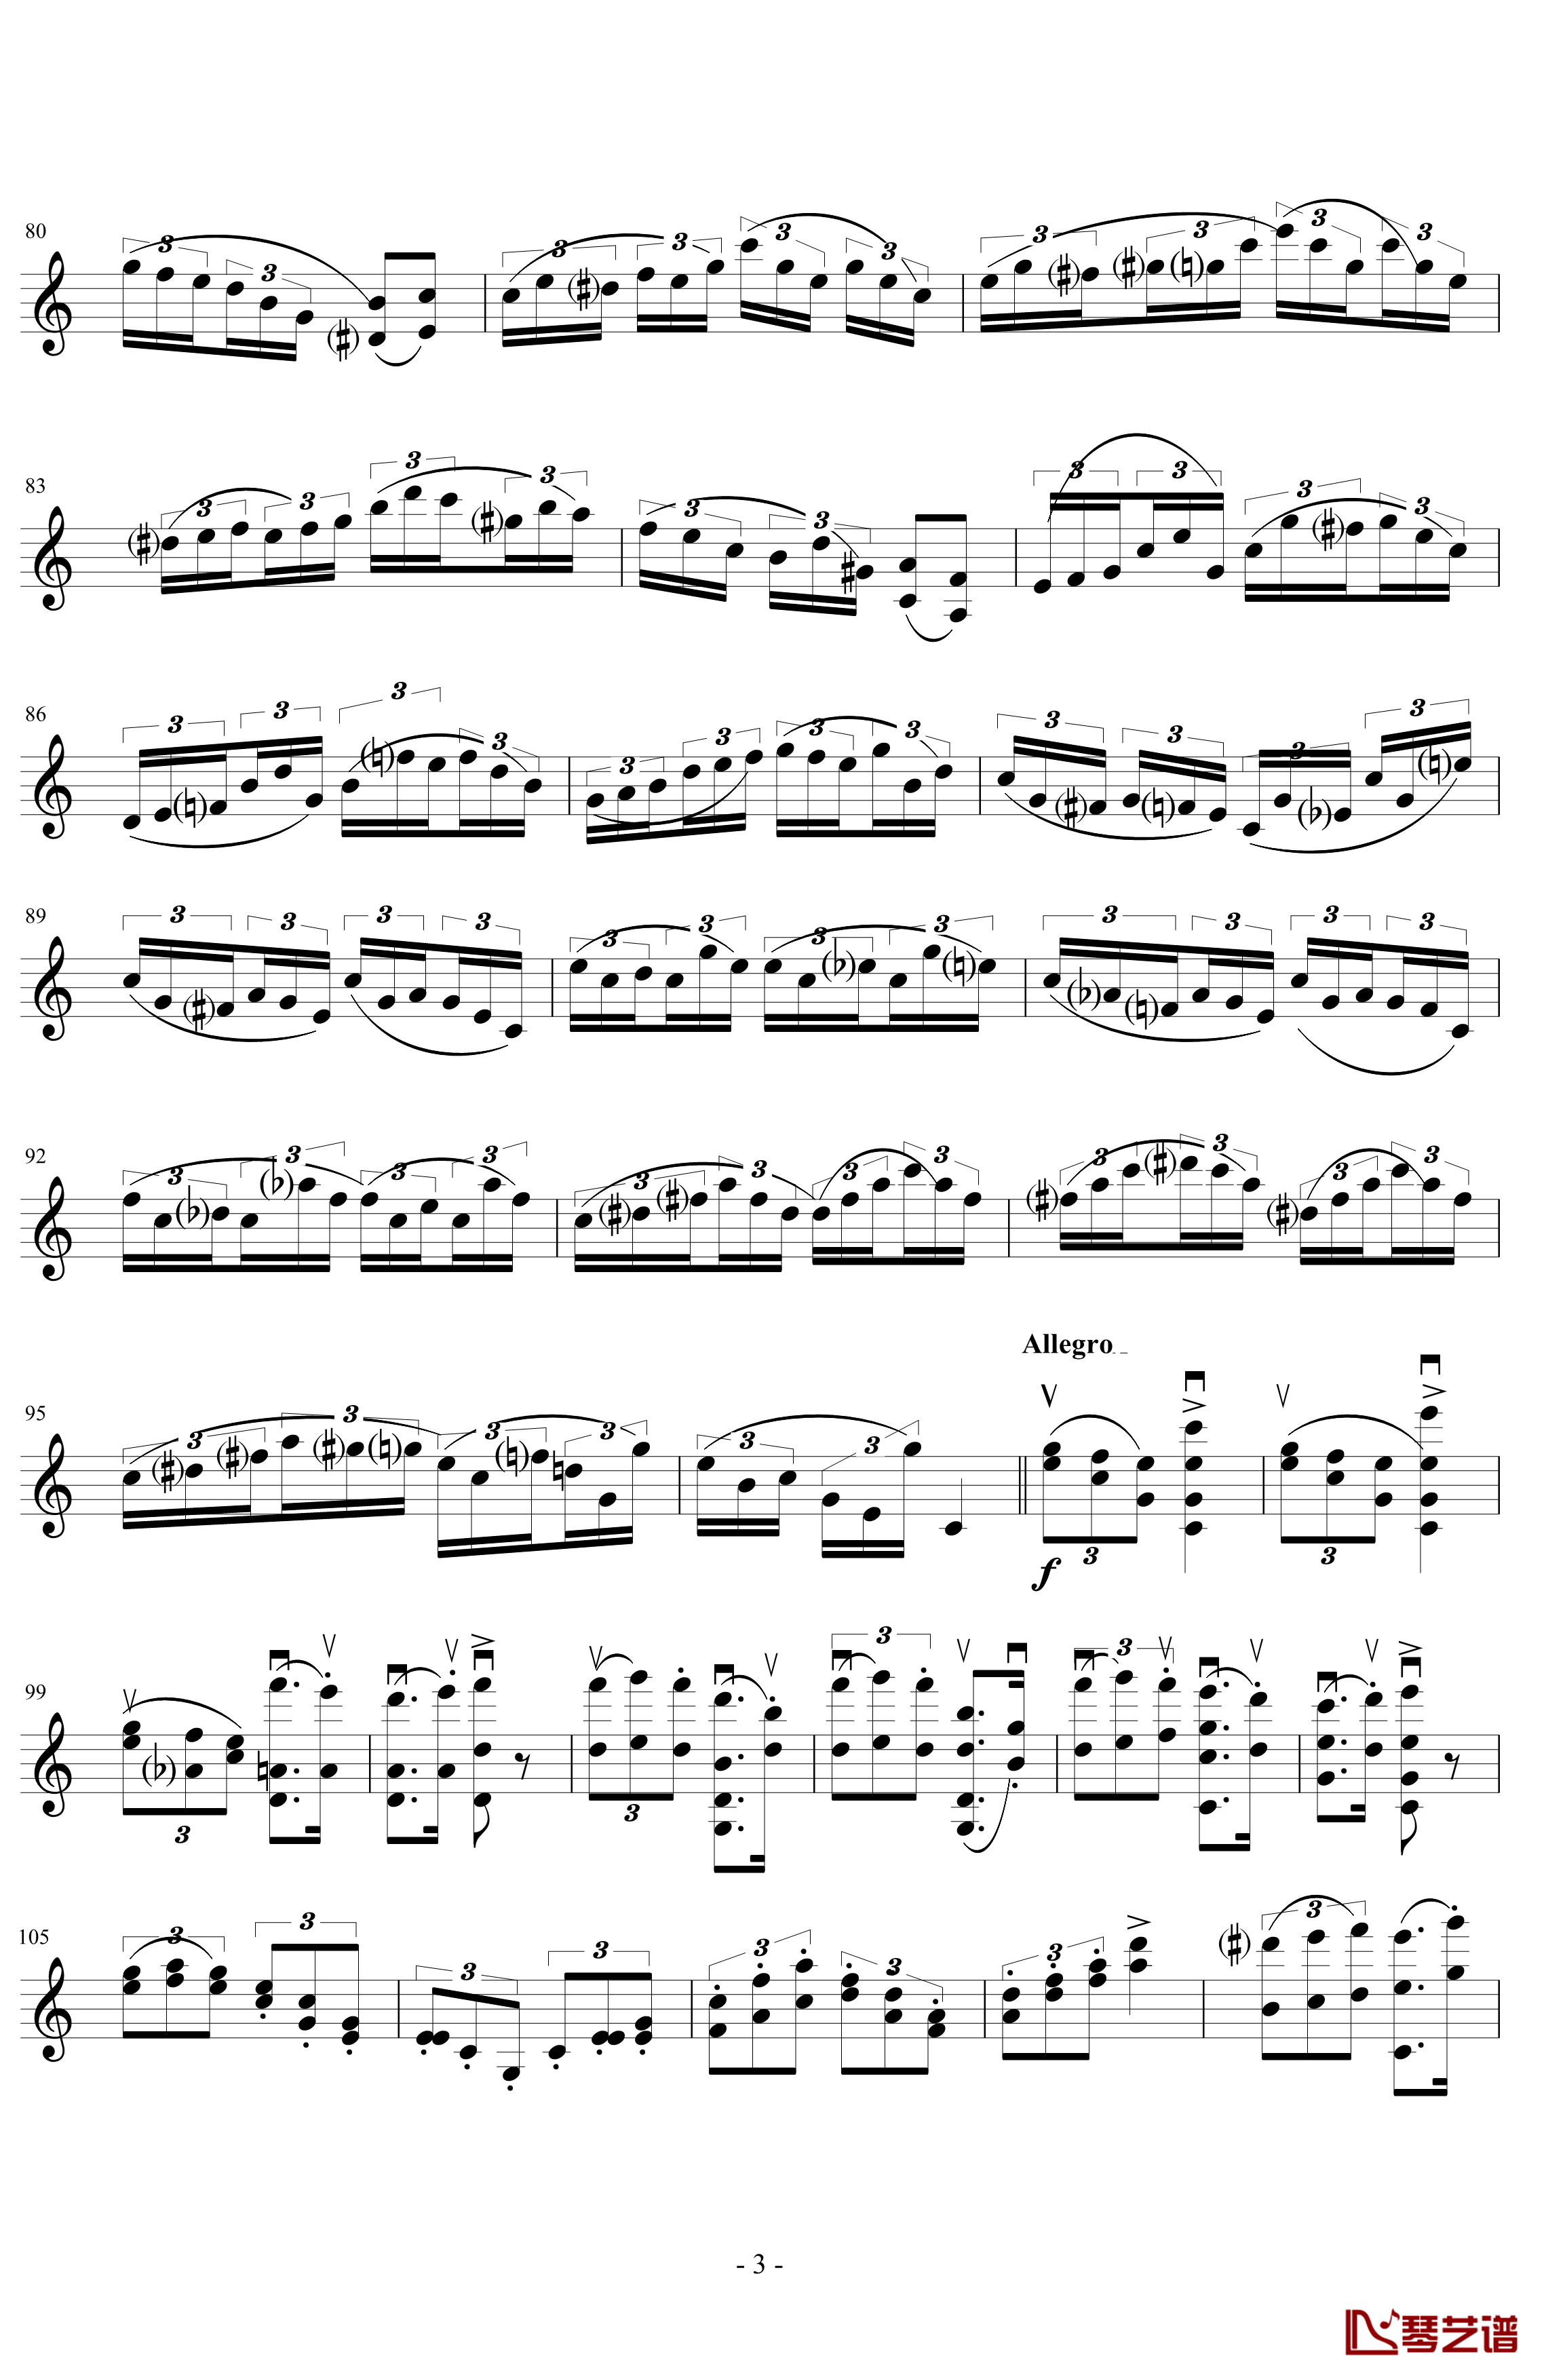 莫扎特主题变奏曲钢琴谱-DXF3